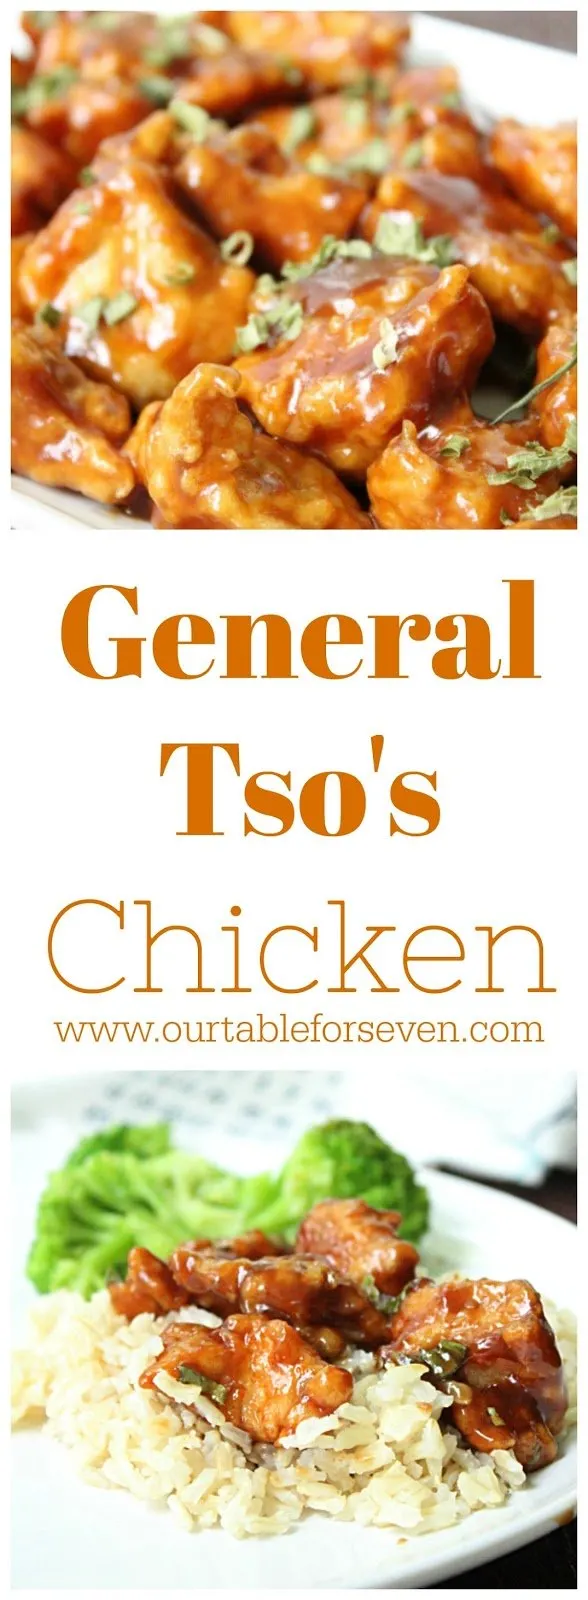 General Tso’s Chicken #chicken #tableforsevenblog @tableforseven #generaltsochicken